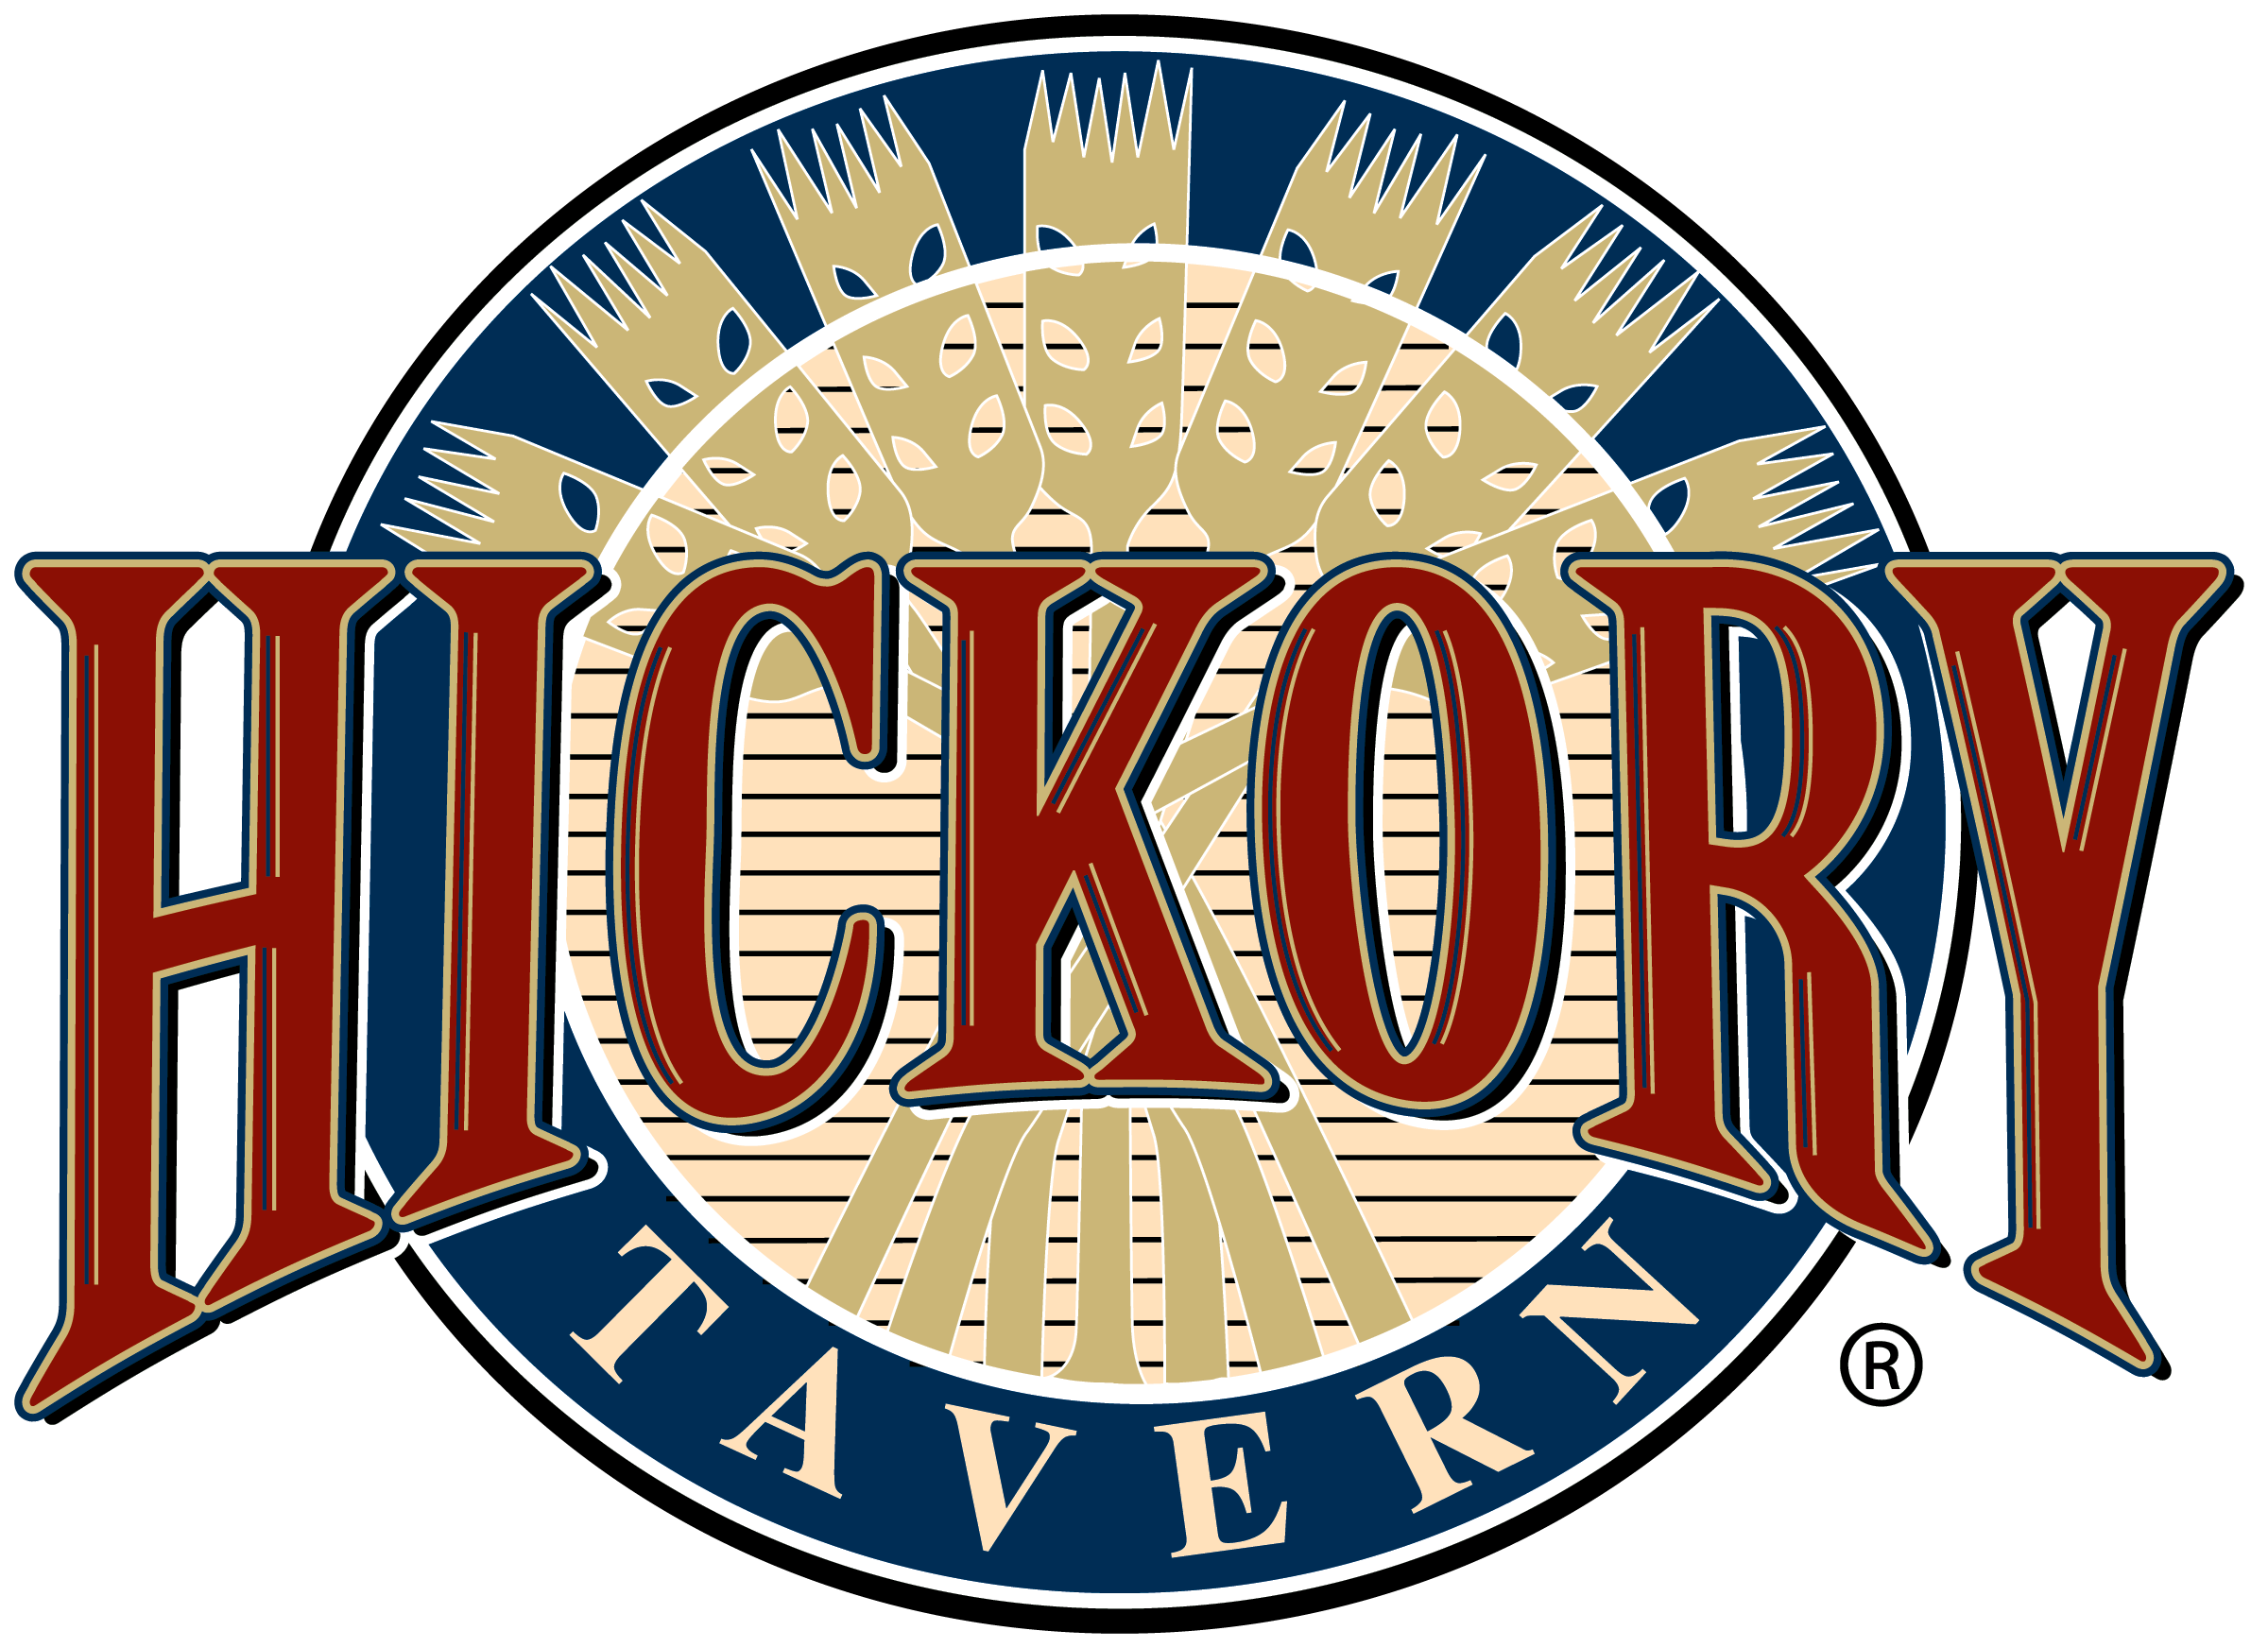 Hickory Tavern-new logo